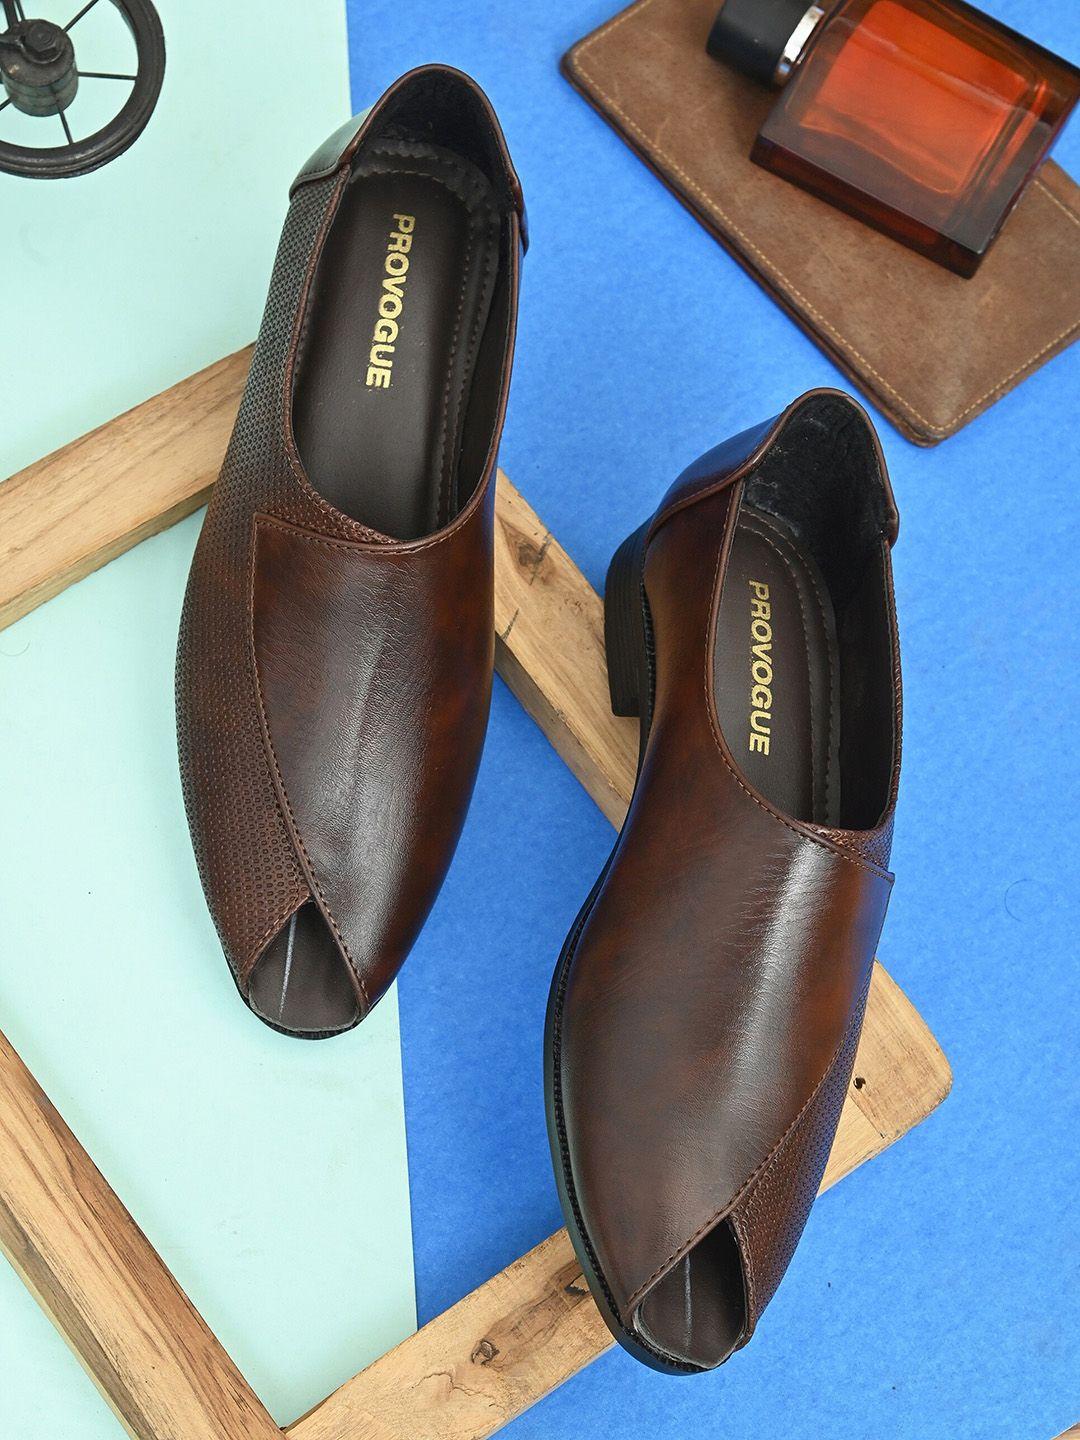 provogue-men-ethnic-shoe-style-sandals